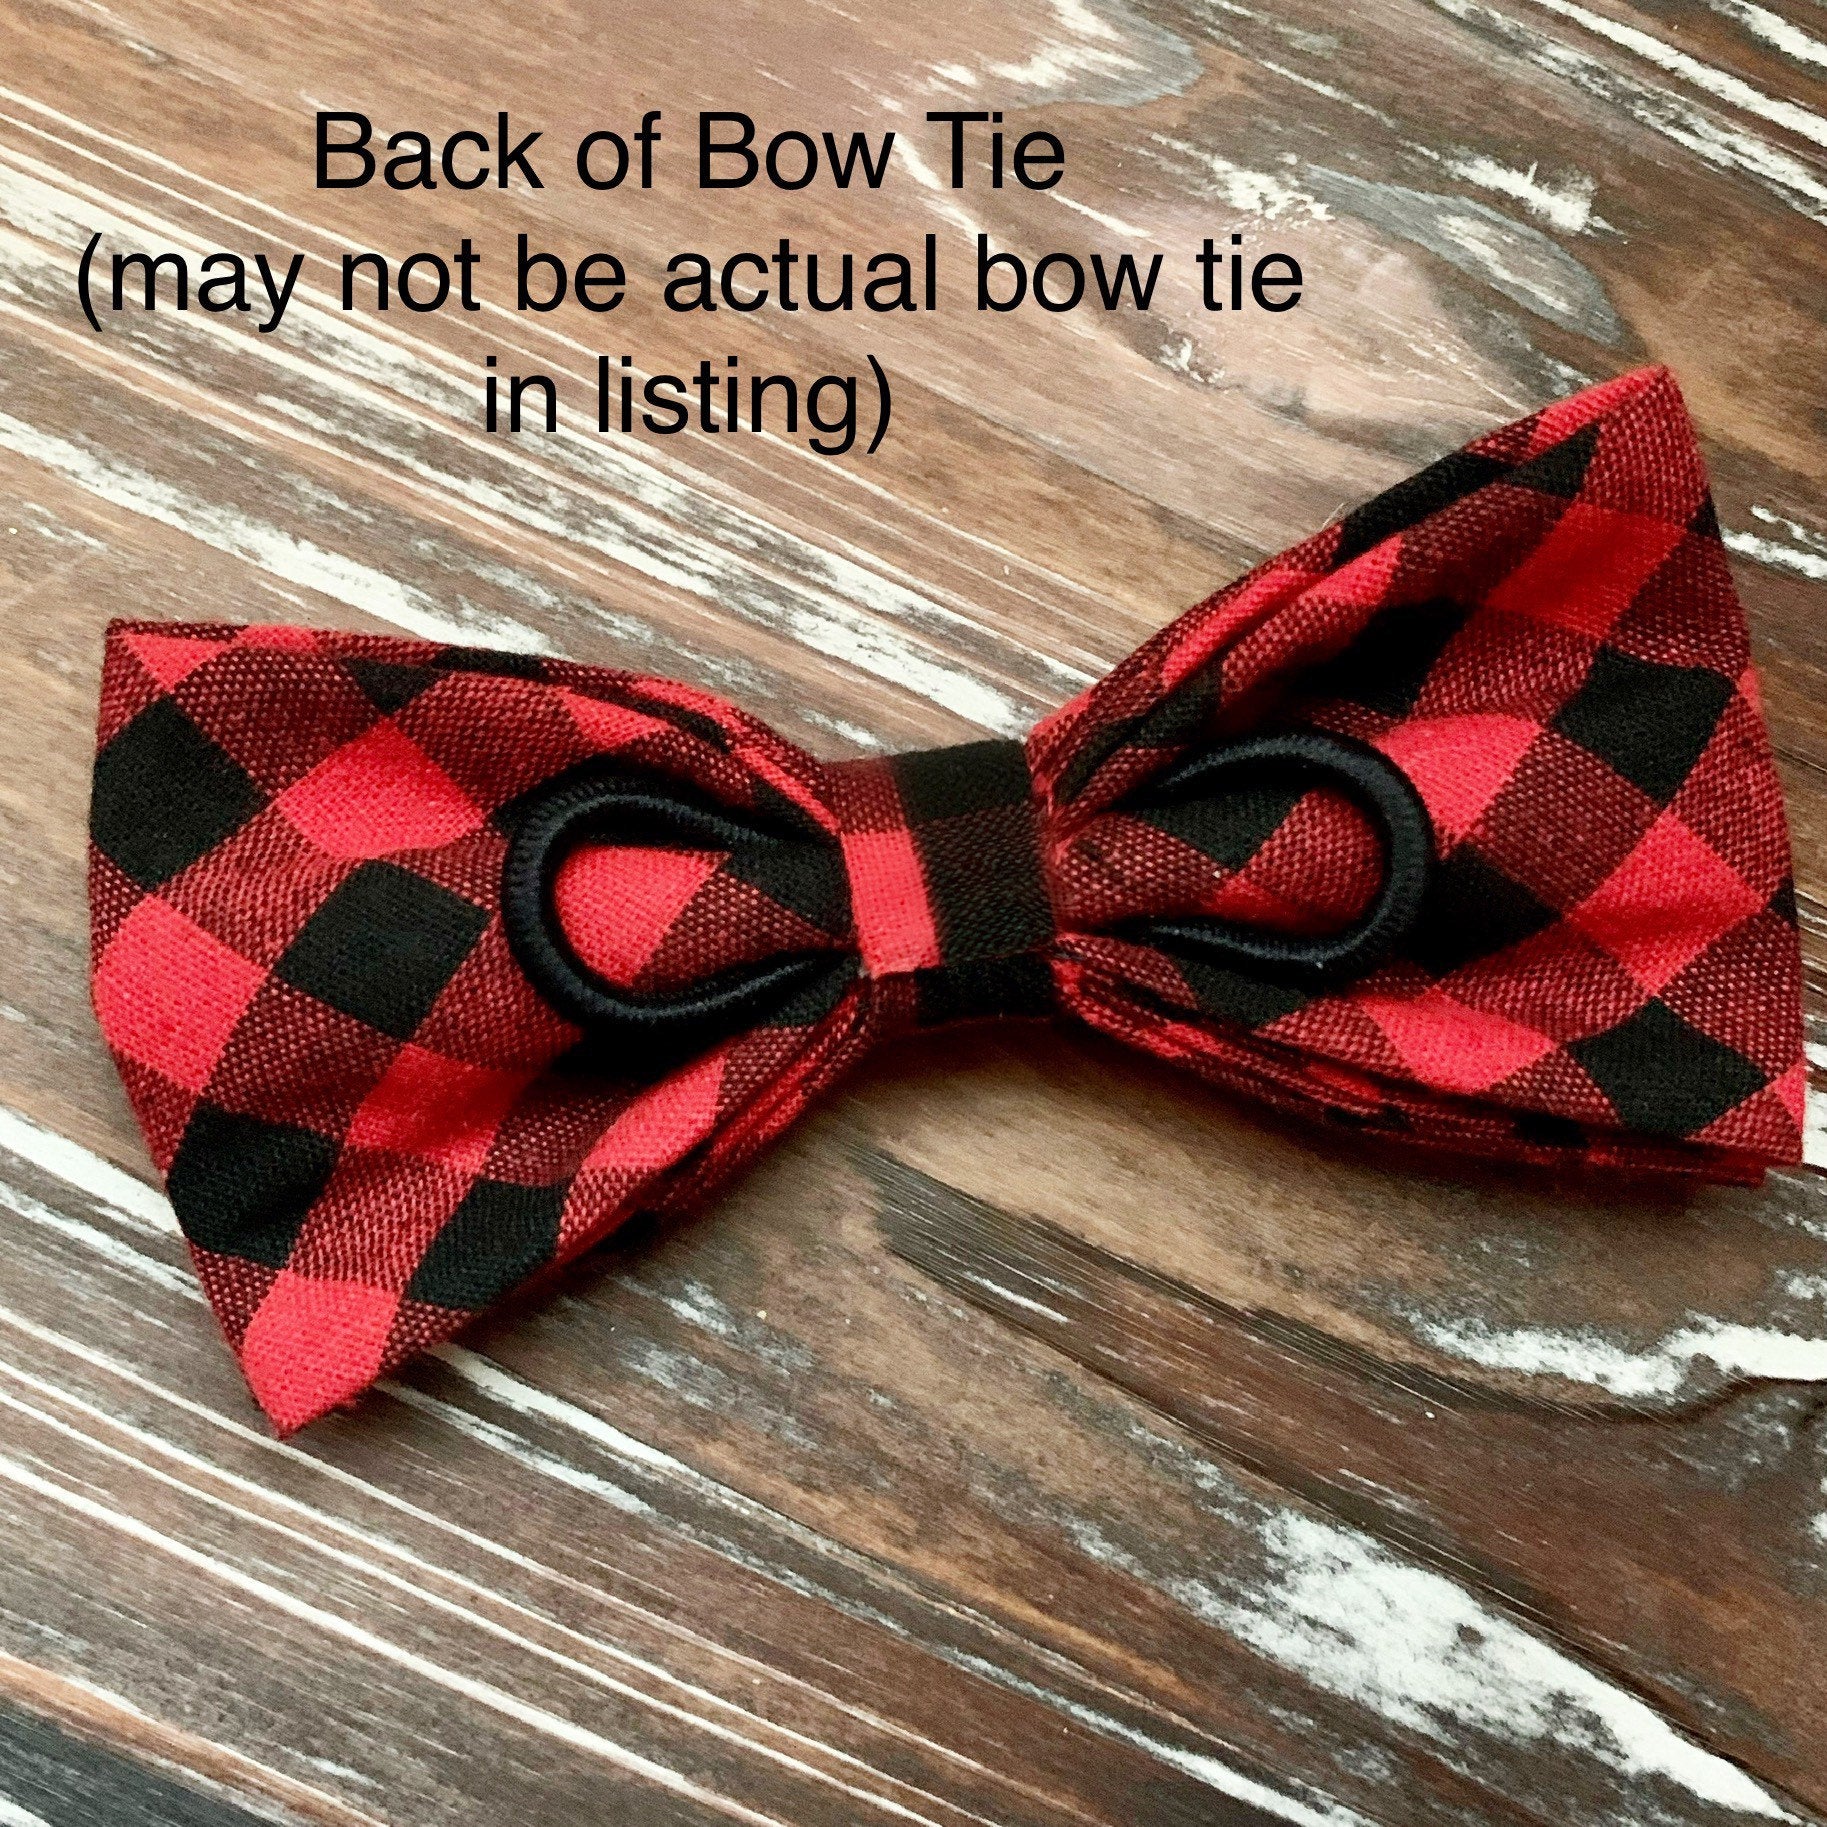 Dog Bone Bowtie, Dog Bow Tie for Dog Gift, Dog Bow Ties Gifts for Dog Lovers, Dog Mom Gift, Dog Bowtie Boy Dog Accessories, Cute Dog Bows